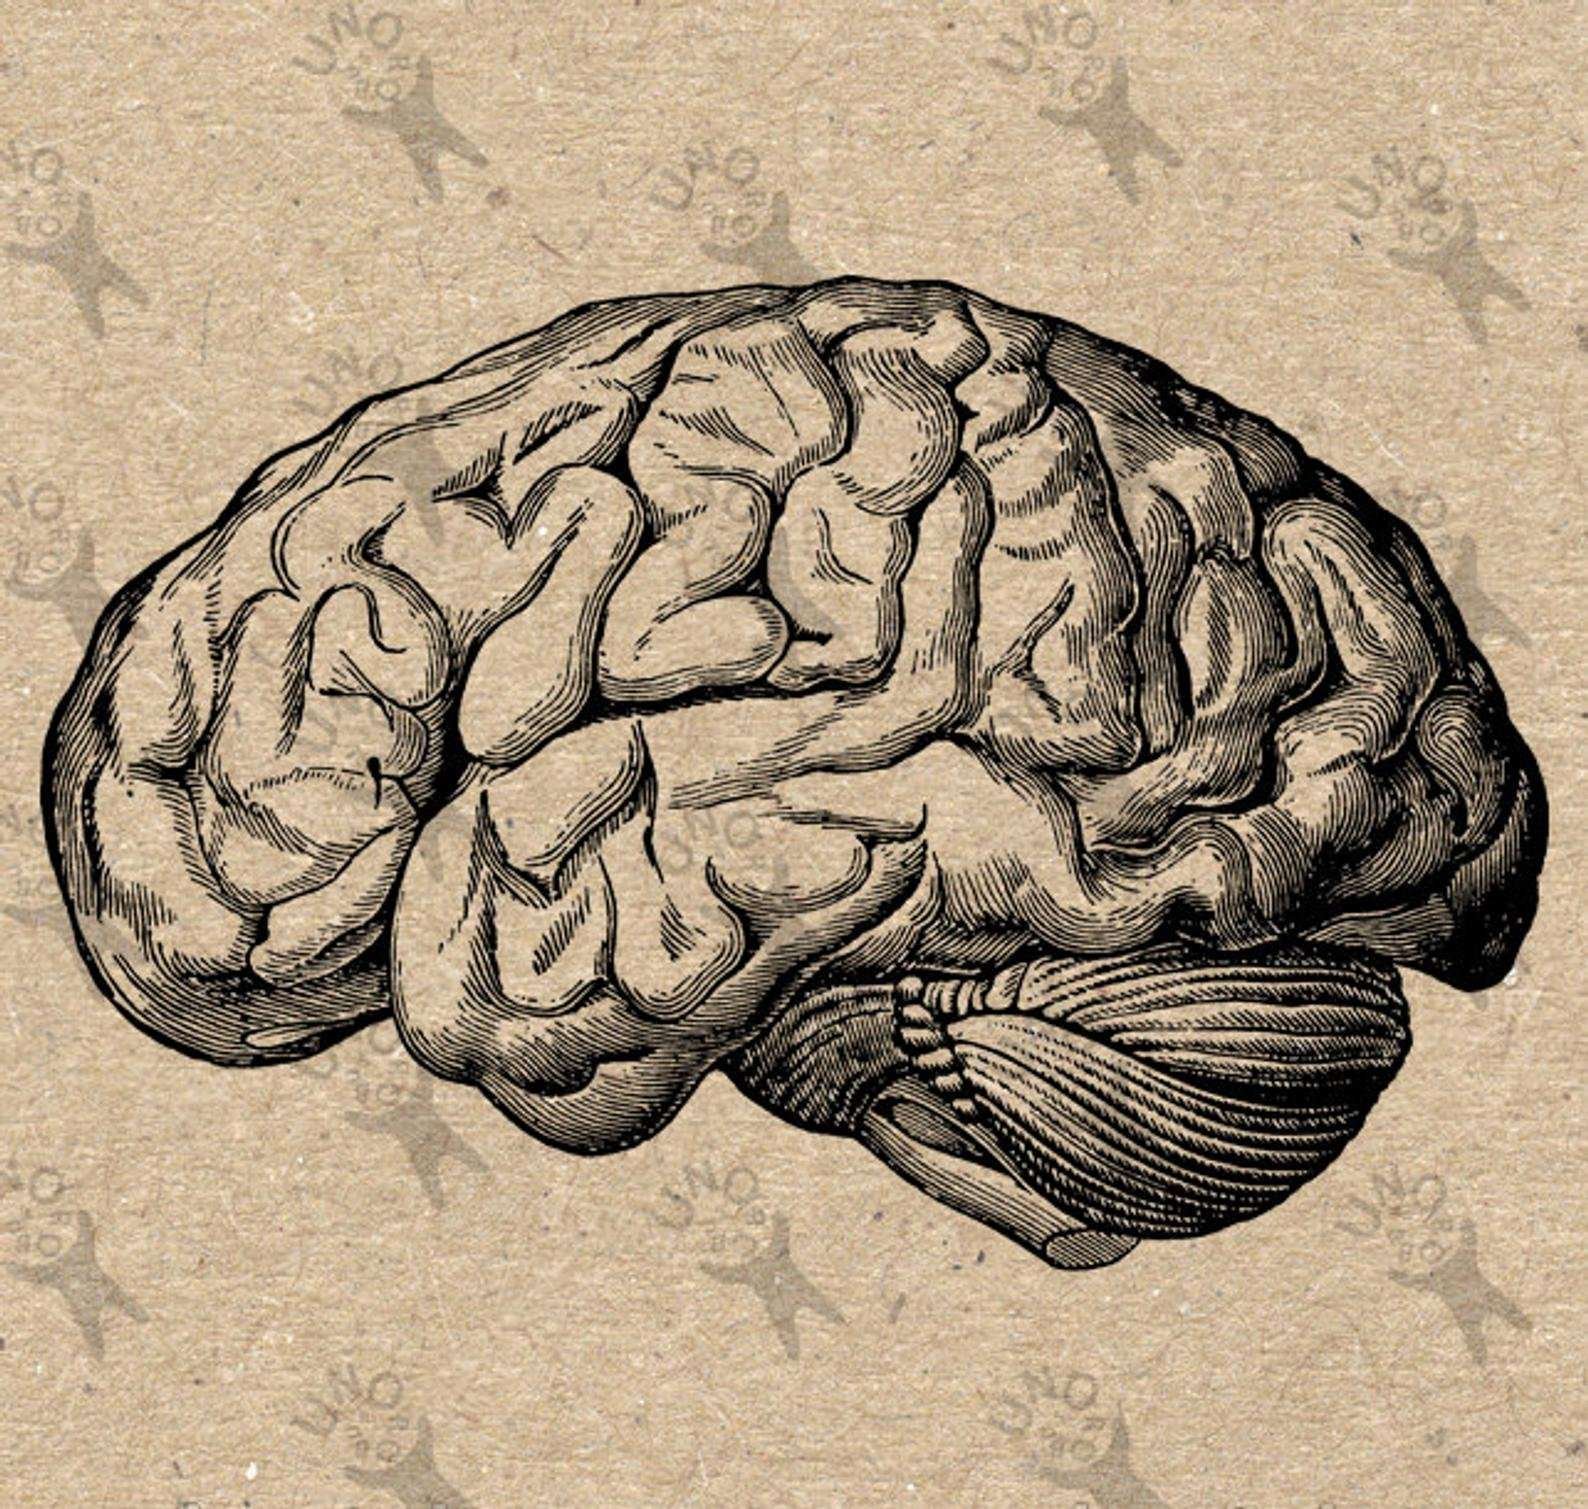 Как нарисовать мозг